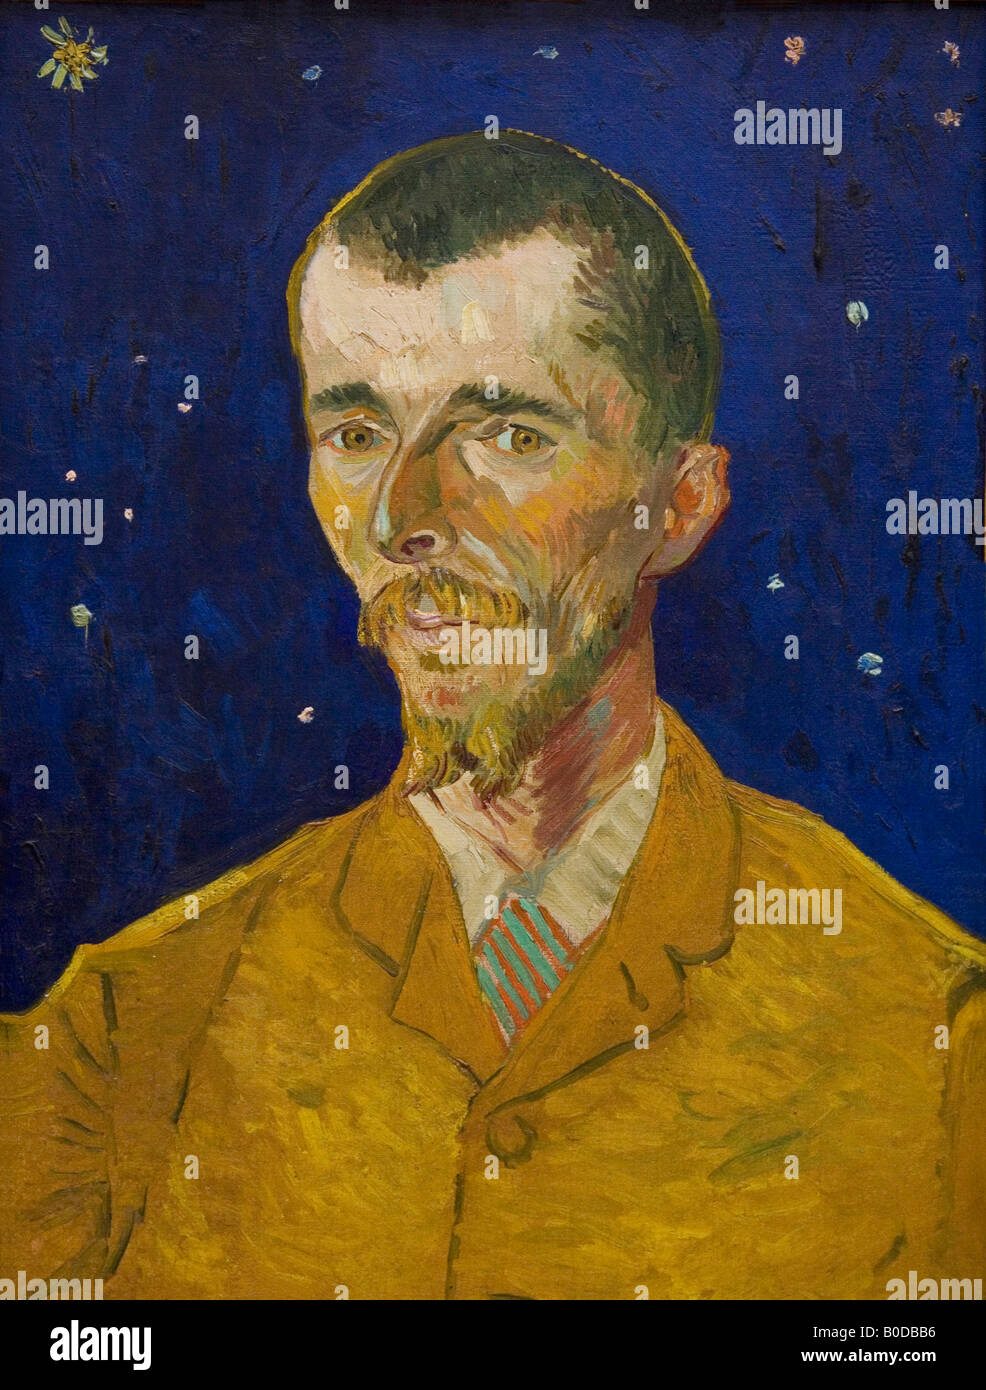 Portrait d'Eugène Boch peint en 1888 Vincent van Gogh huile sur toile Musée D'Orsay, musée et galerie d'Art Paris France Banque D'Images